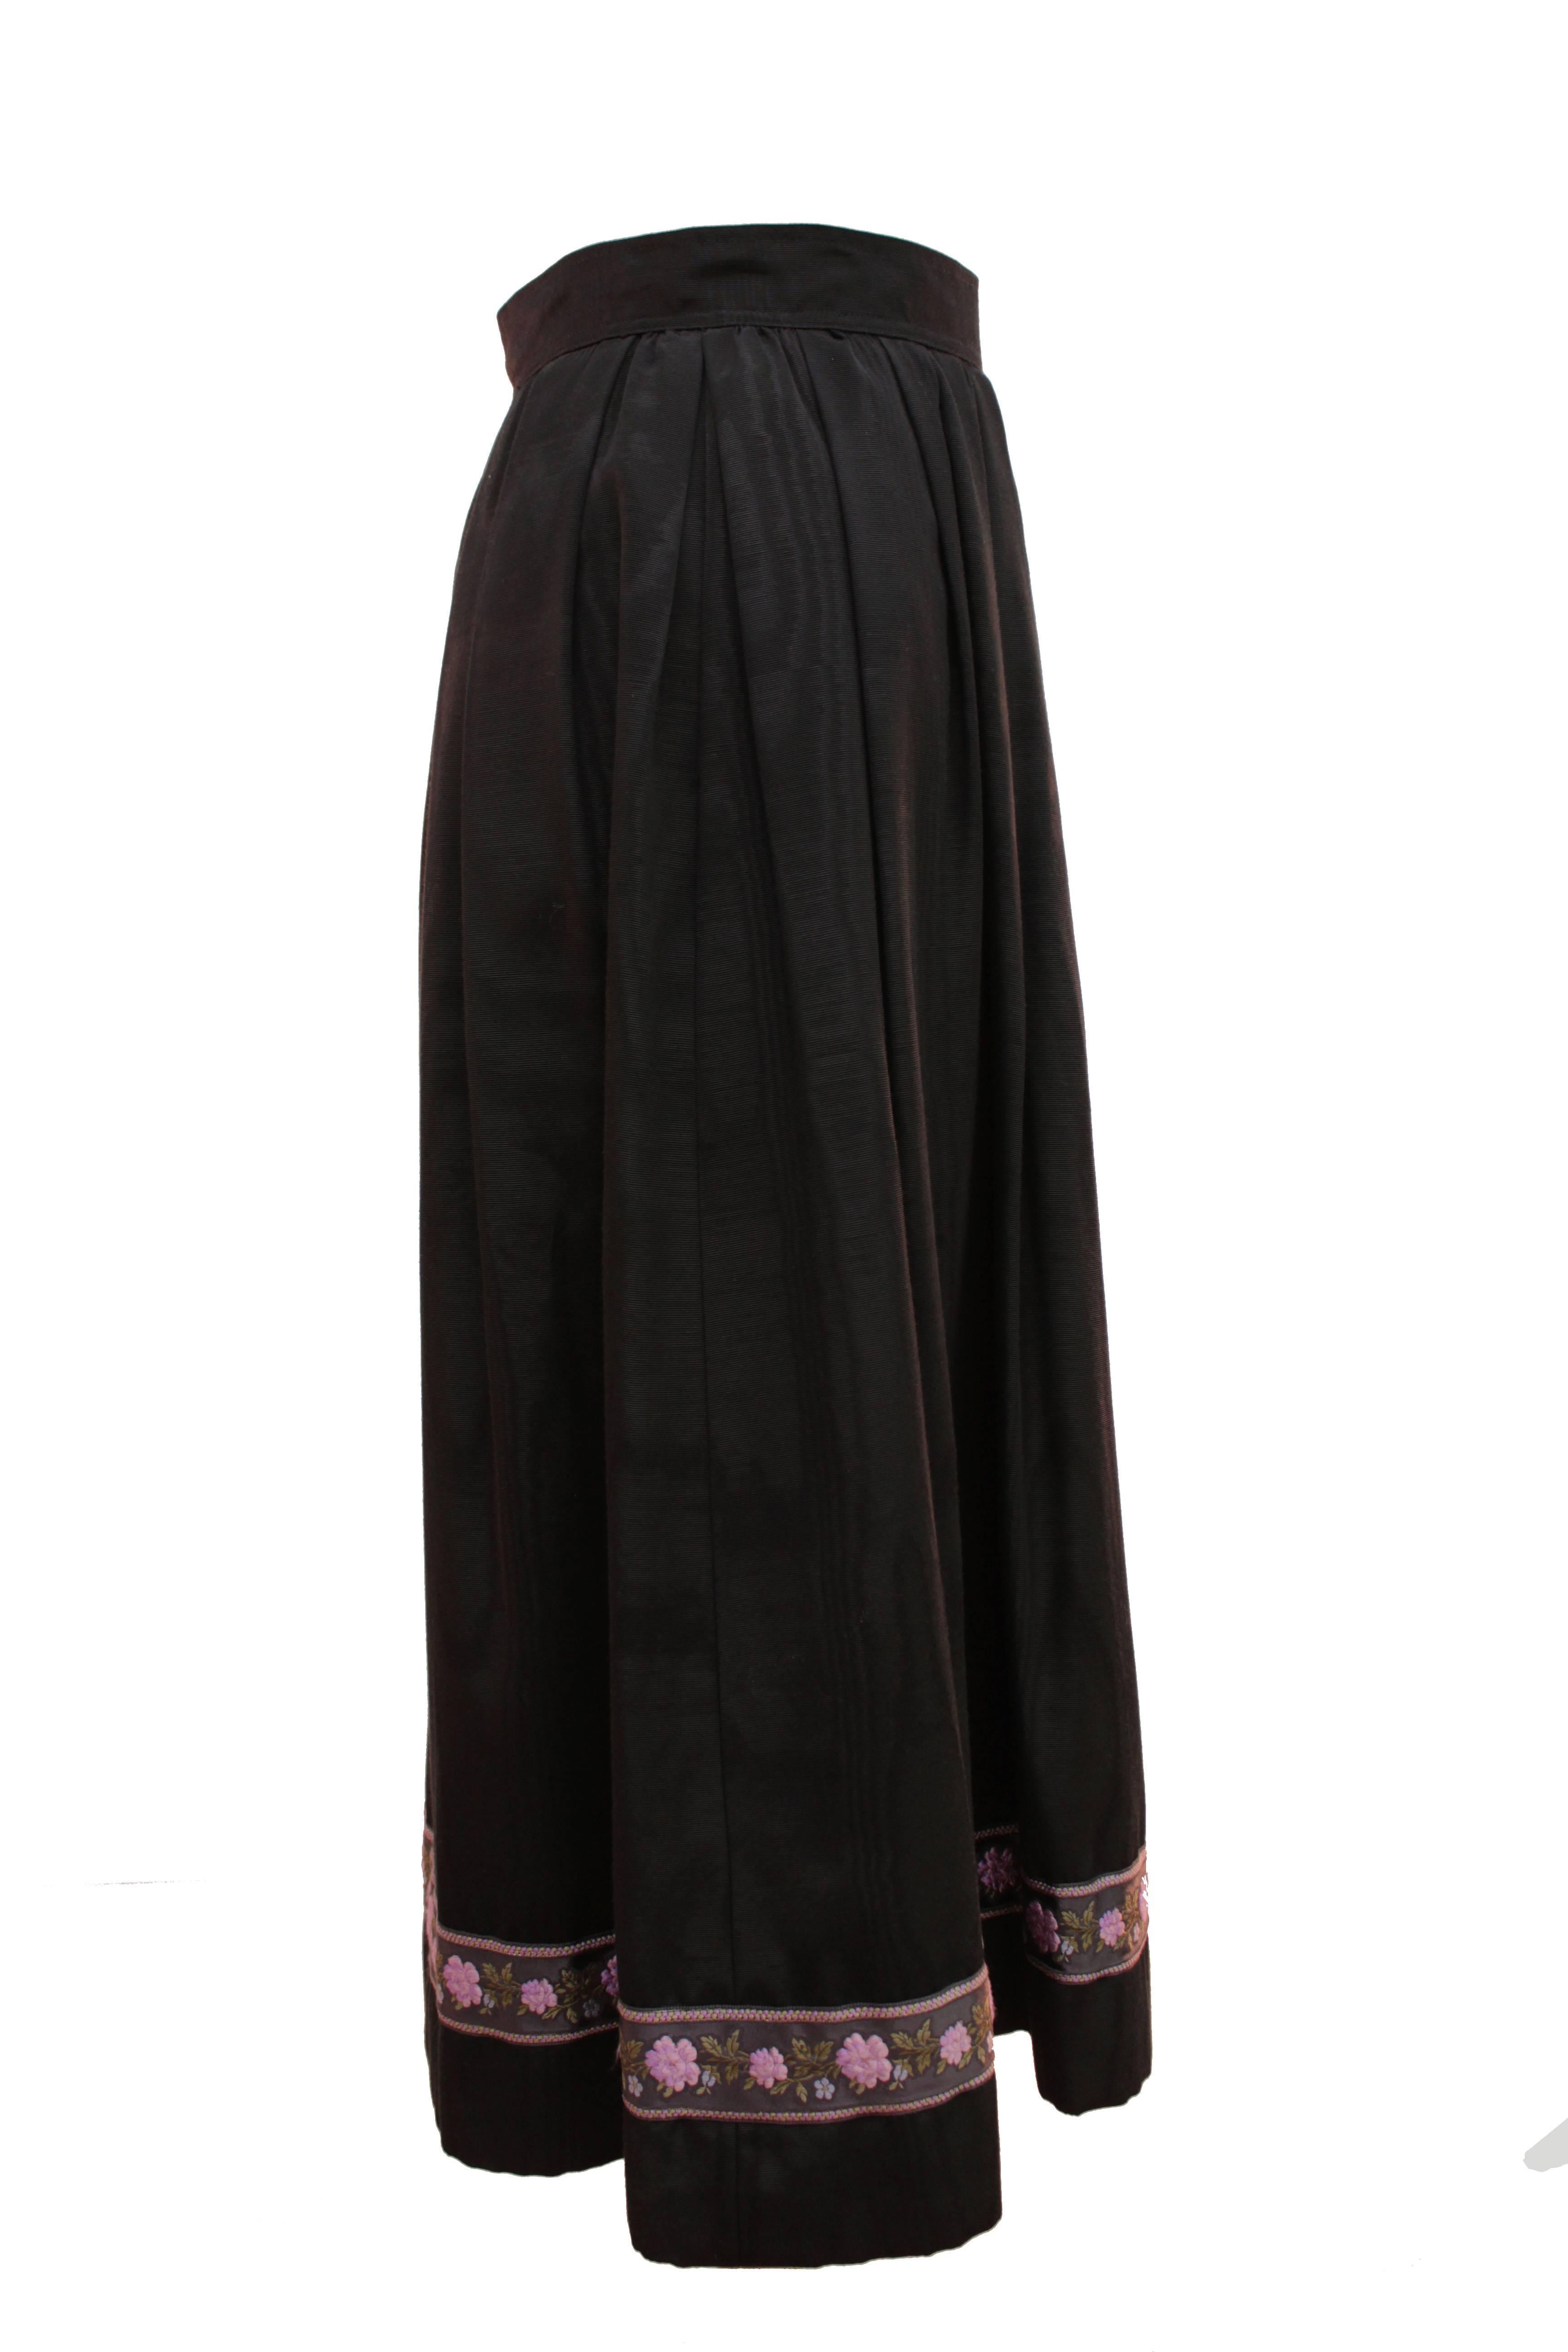 Yves Saint Laurent Silk Skirt Black Moire Embroidered Hem Russian Peasant 70s 2